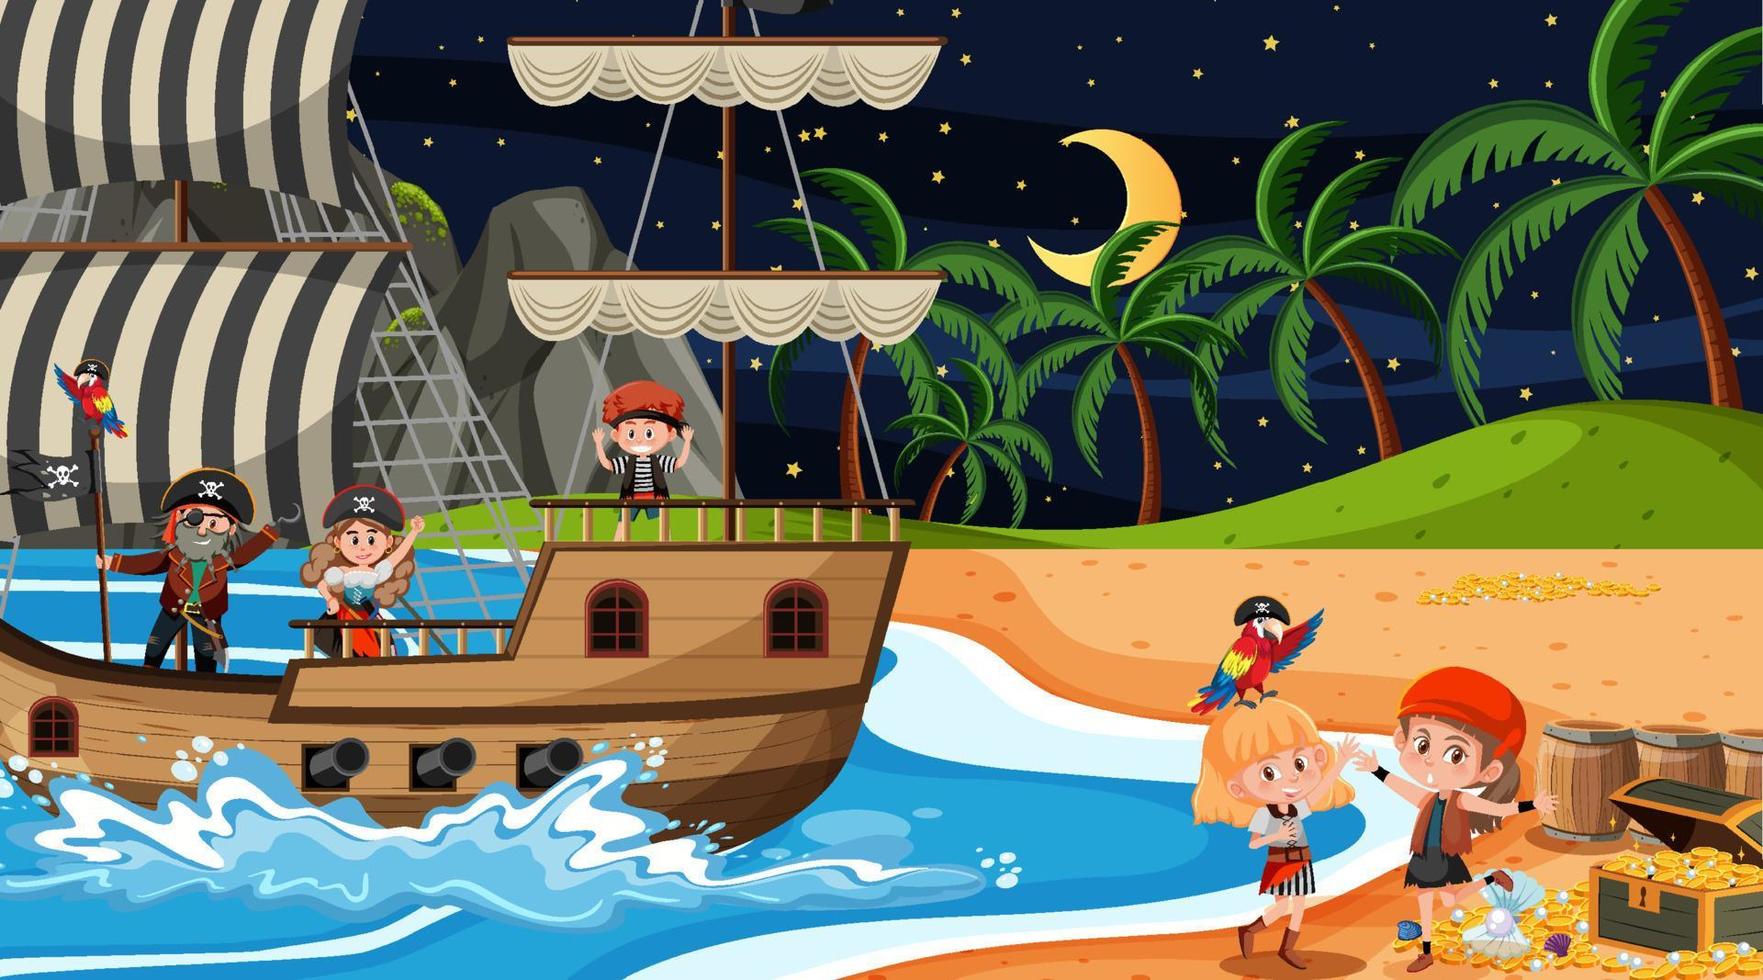 Treasure Island-scène 's nachts met piratenkinderen op het schip vector